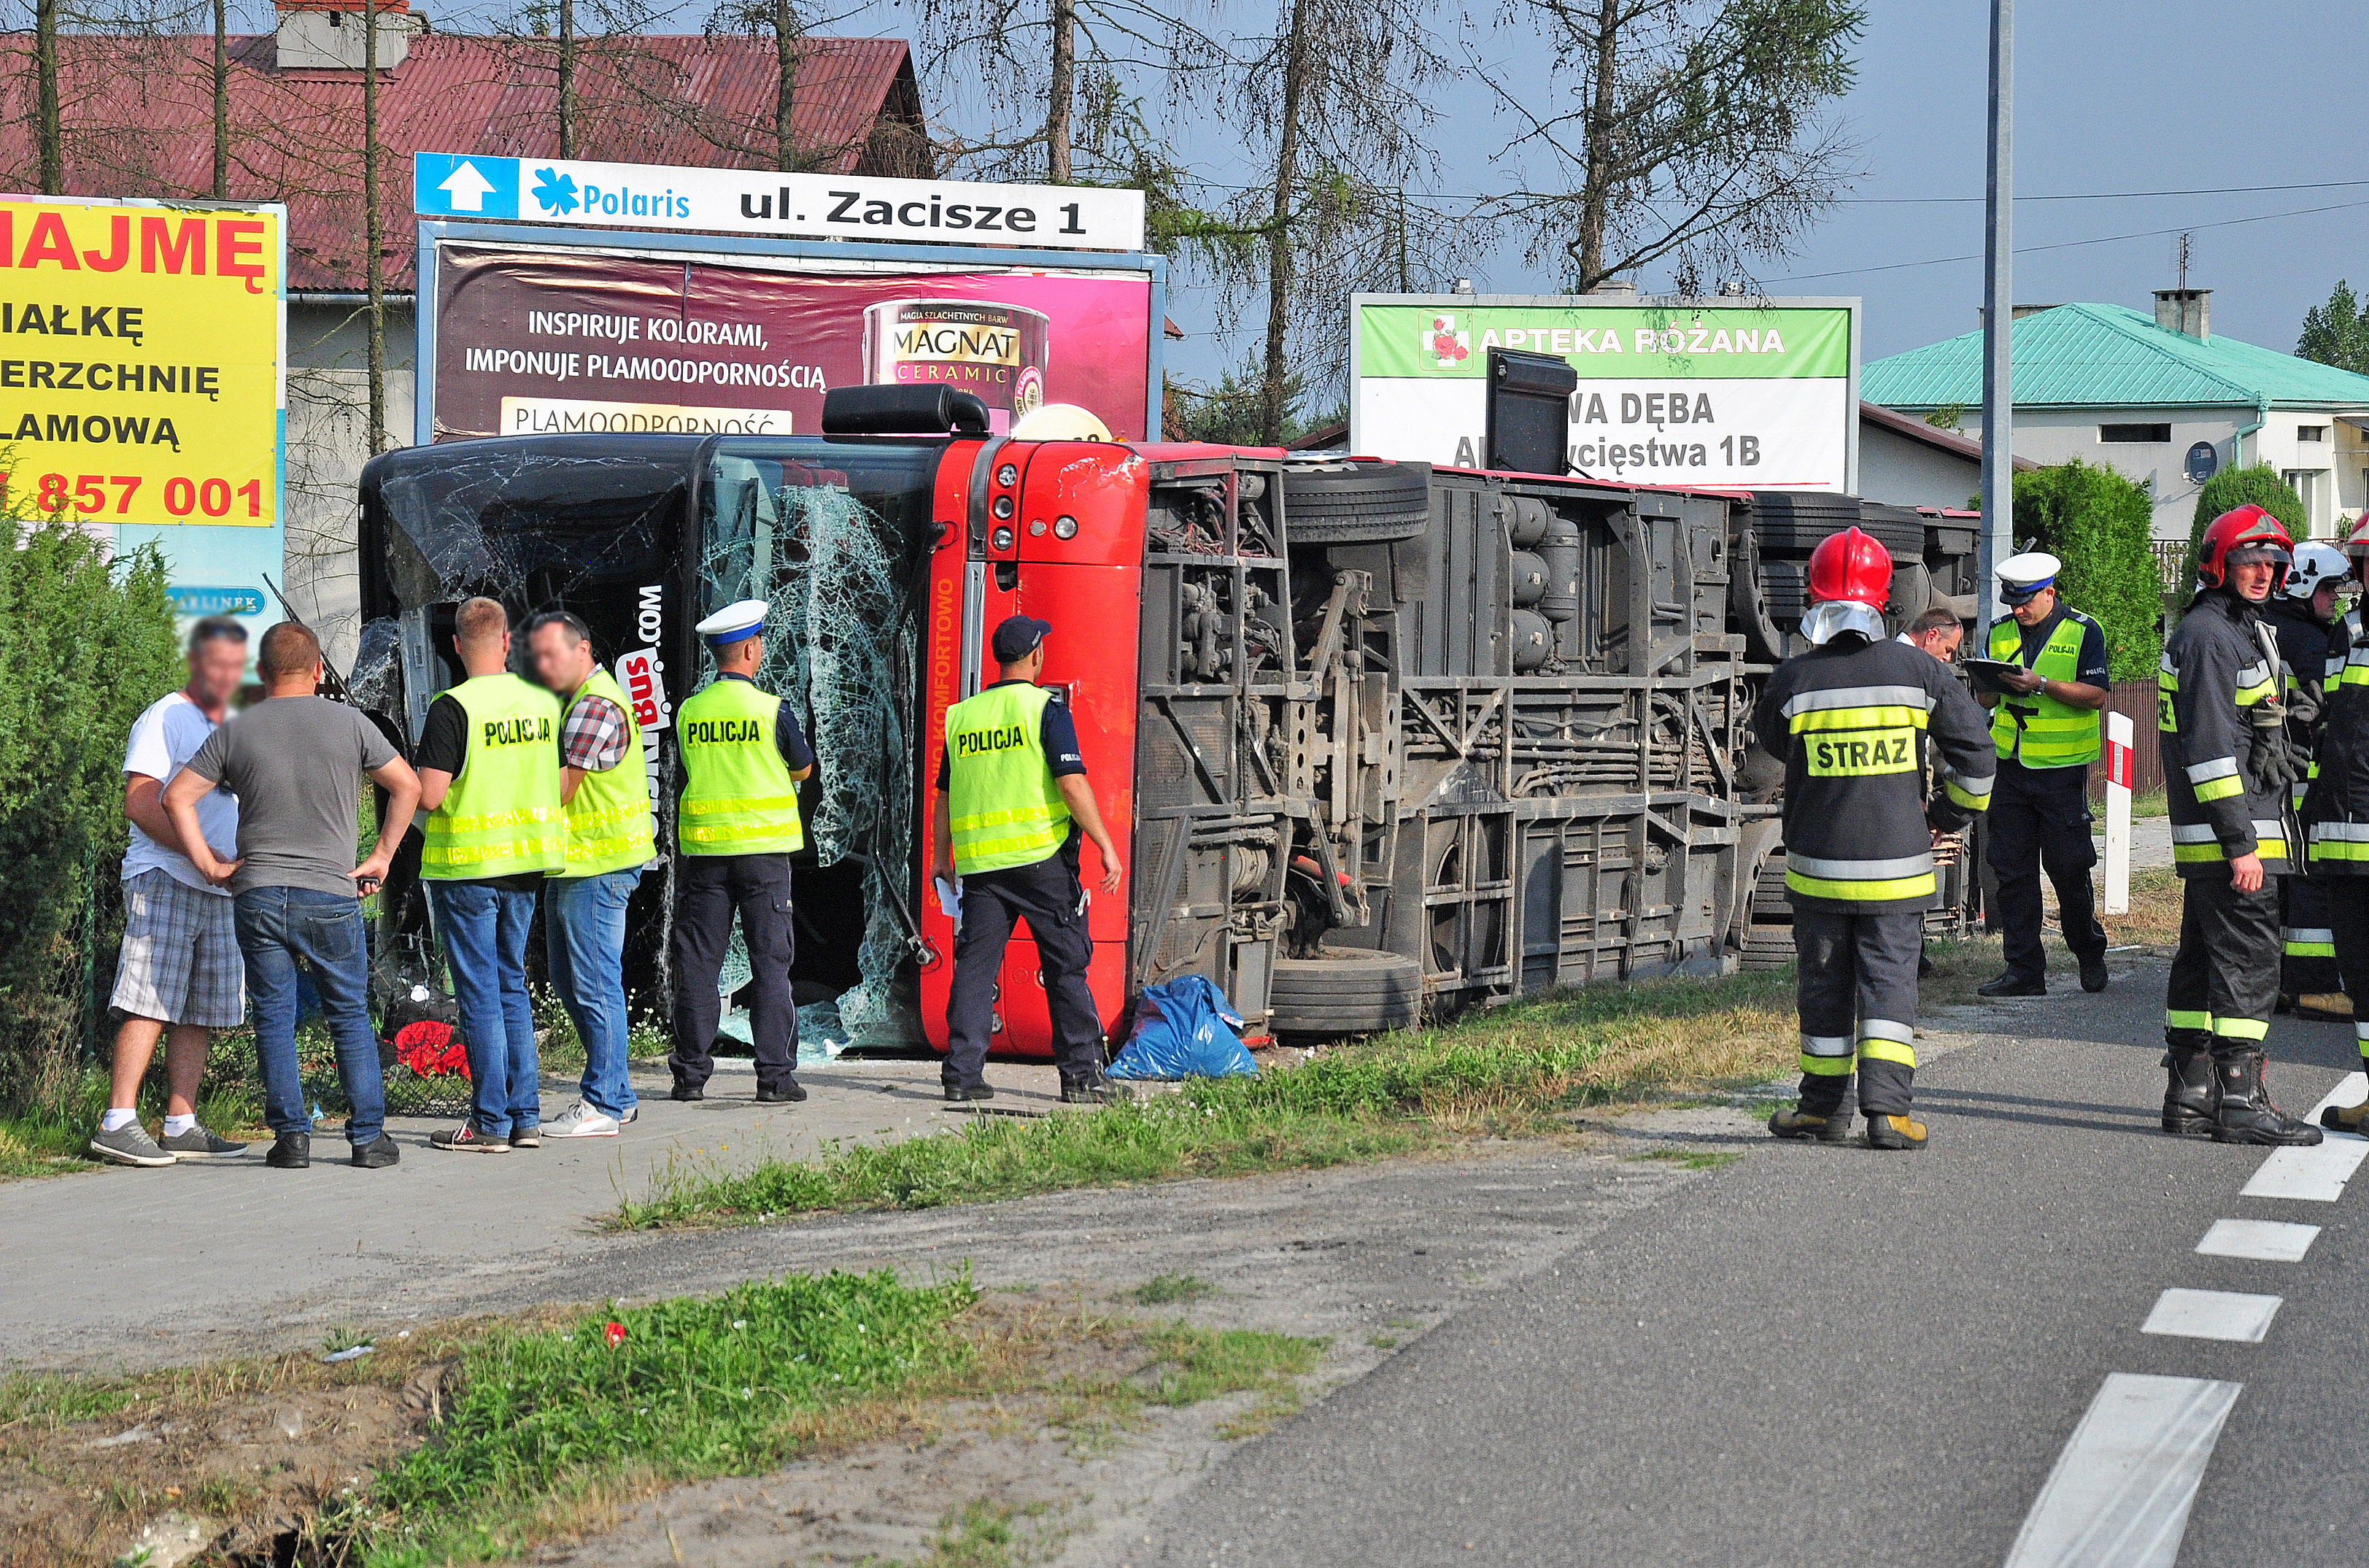 Wypadek Polskiego Busa. Jest wielu rannych  - Zdjęcie główne